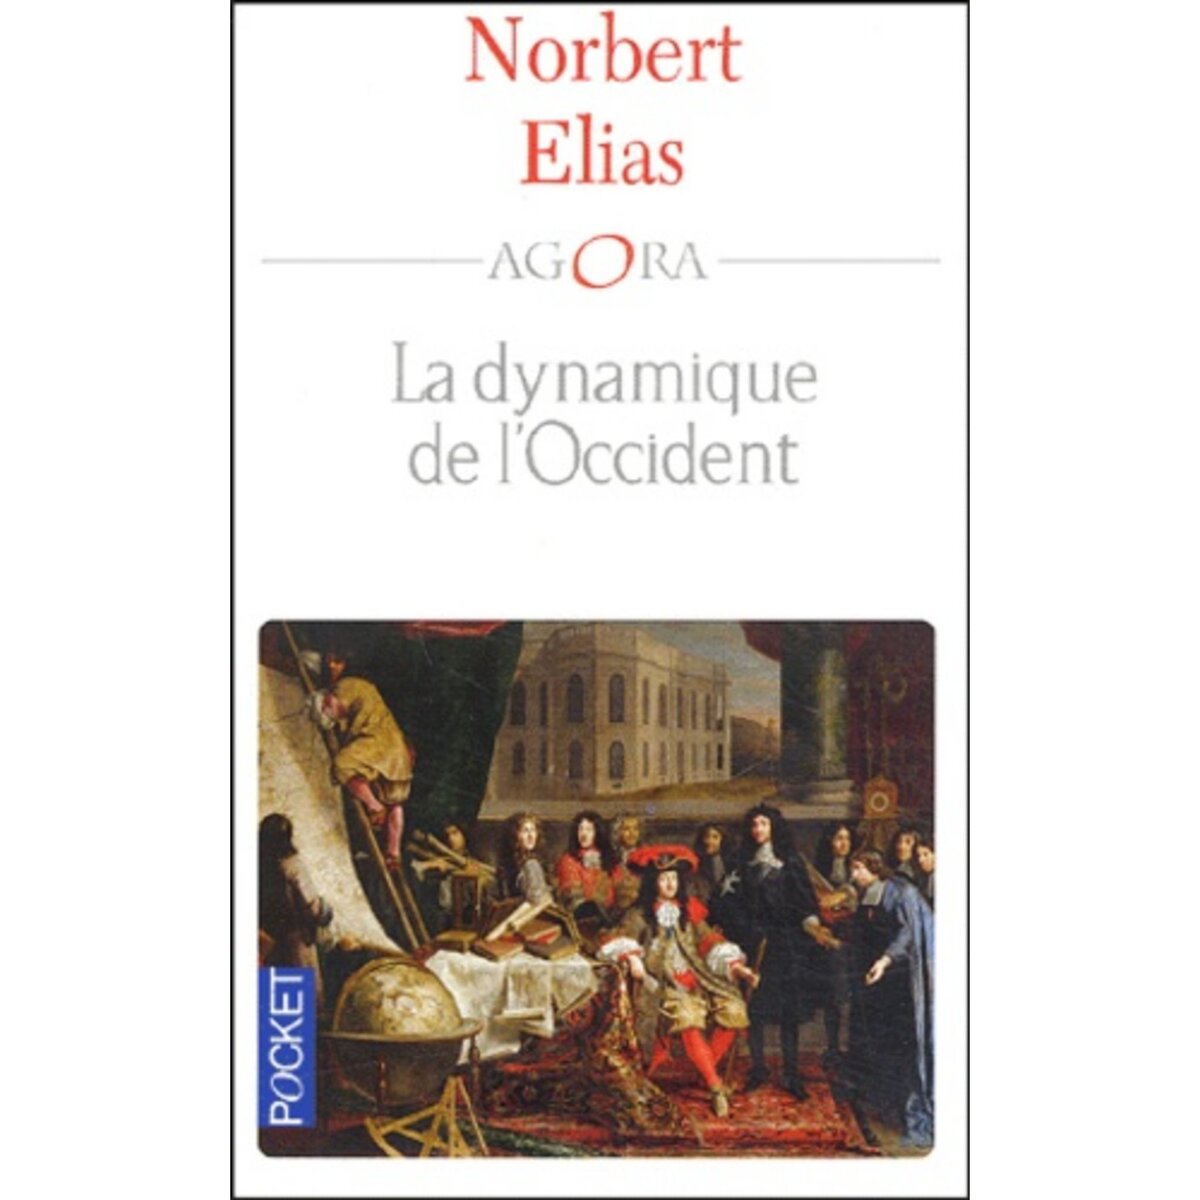  LA DYNAMIQUE DE L'OCCIDENT, Elias Norbert